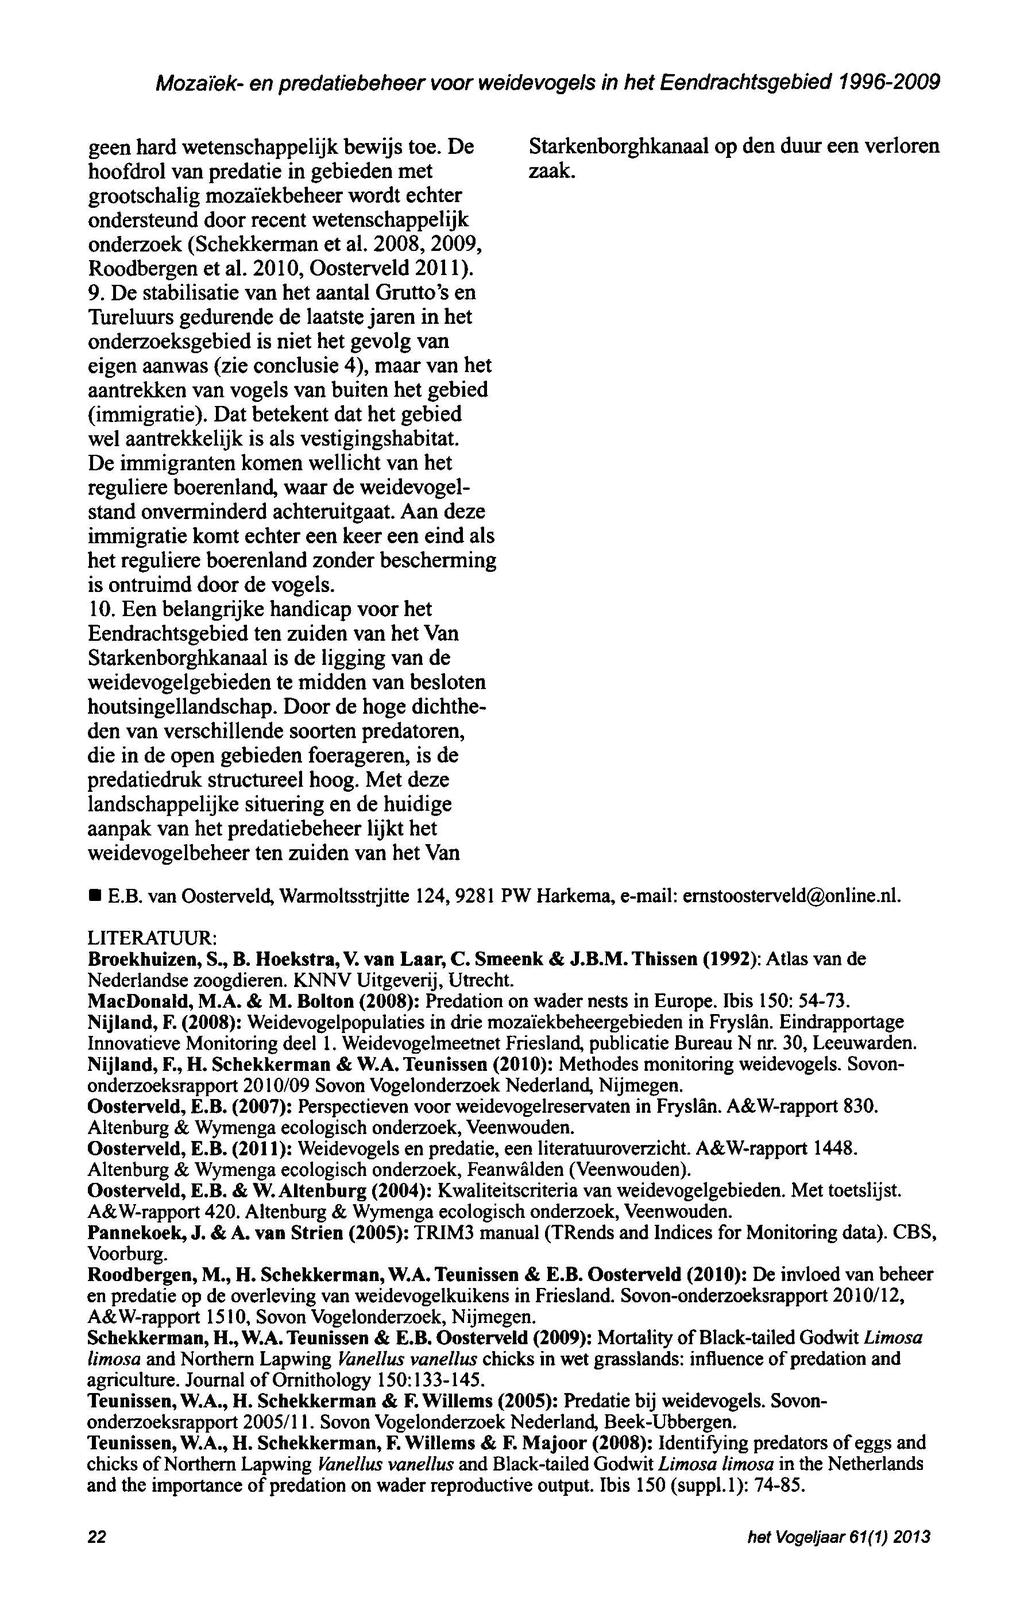 Mozaiek en predatiebeheer voor weldevogels in bet Eendrachtsgebied 19962009 geen hard wetenschappelijk bewijs hoofdrol van predatie in gebieden met toe. De Starkenborghkanaal op zaak.